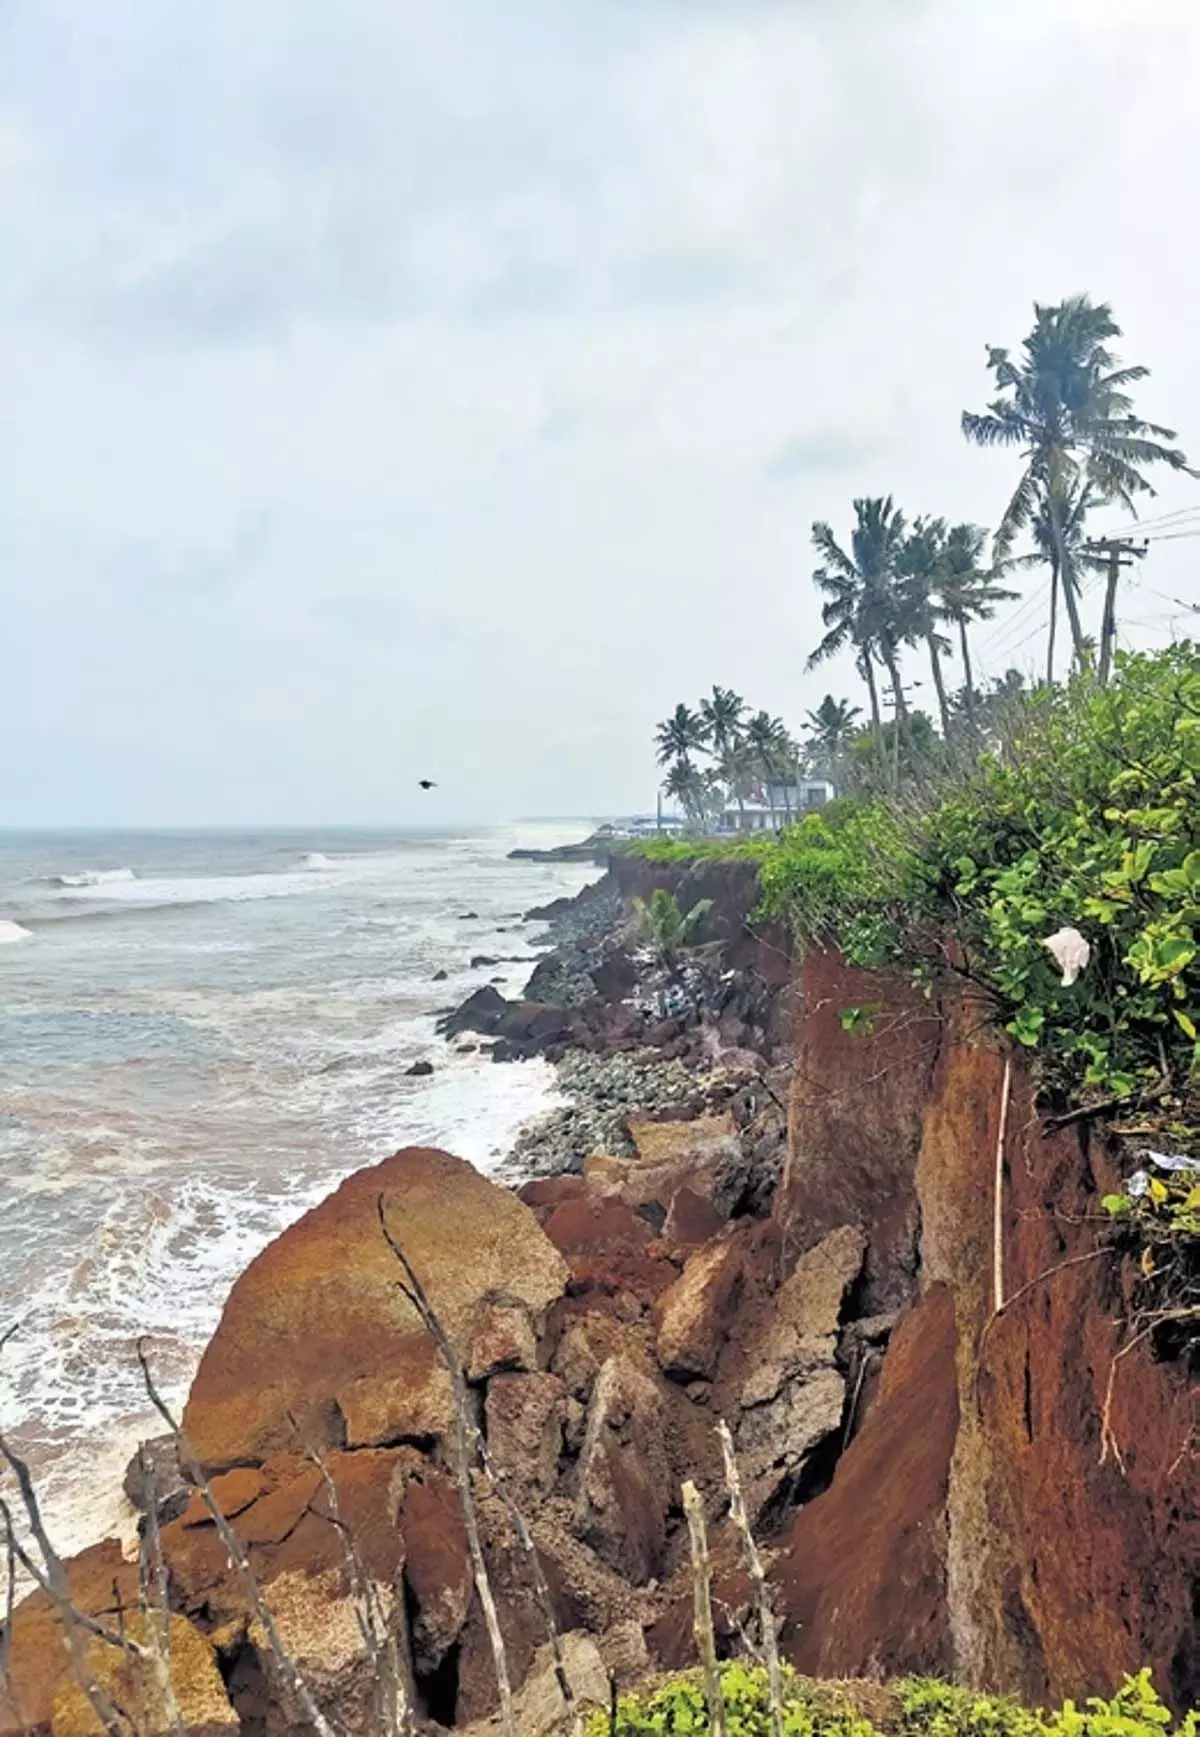 Kerala : हरित कार्यकर्ता ने वर्कला चट्टान को ध्वस्त करने के लिए जिला कलेक्टर के खिलाफ उच्च न्यायालय का दरवाजा खटखटाया